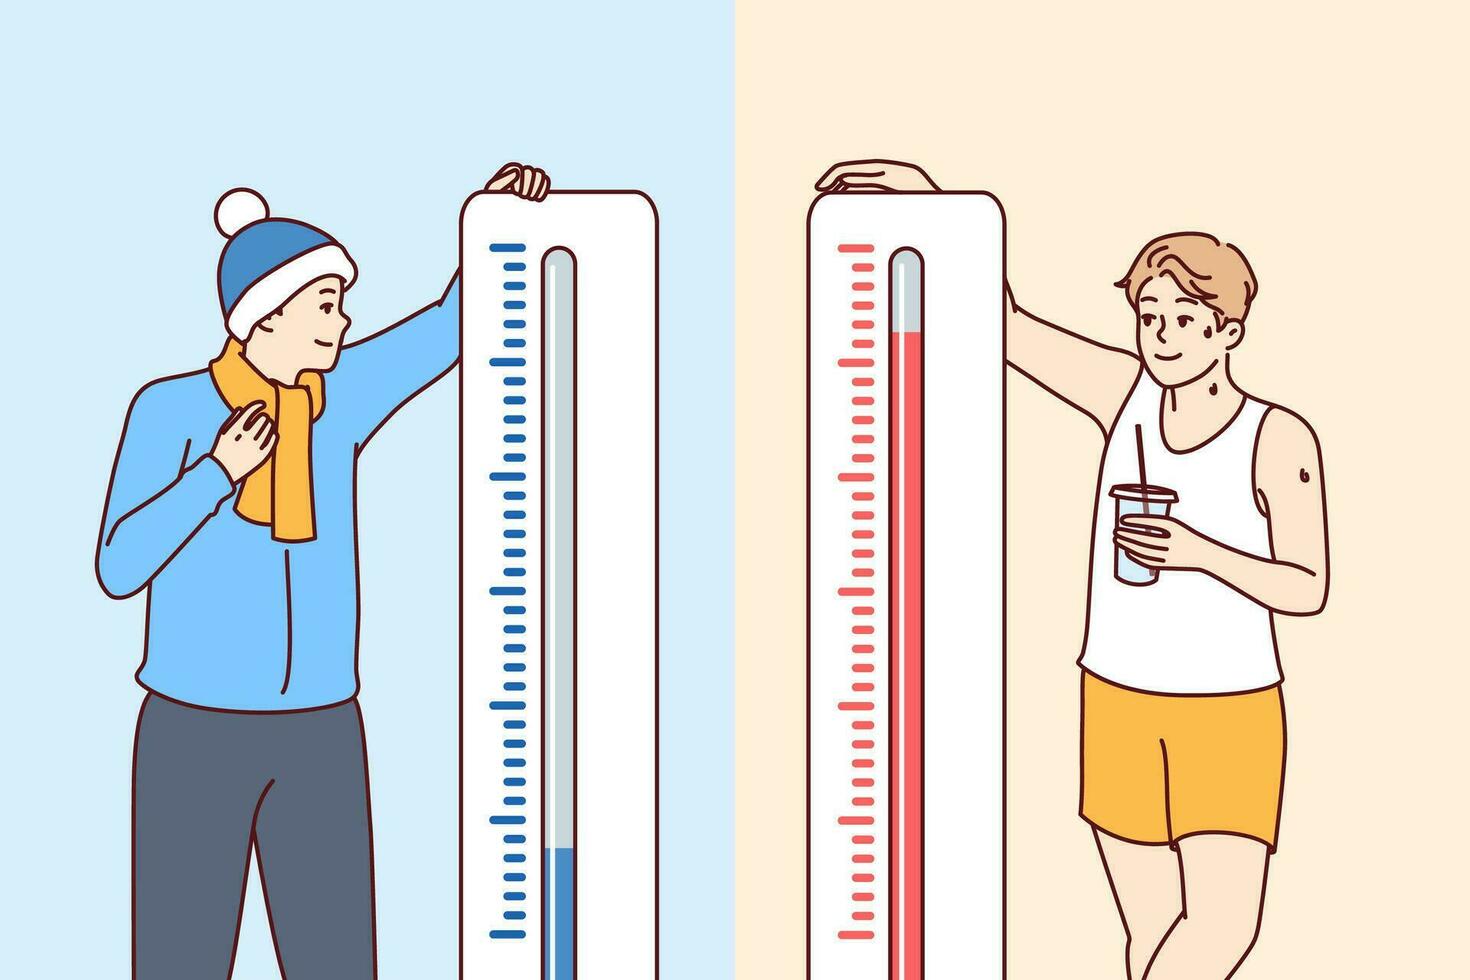 Mann steht in der Nähe von Thermometer zeigen anders Temperaturen und fühlt sich Hitze oder kalt vektor